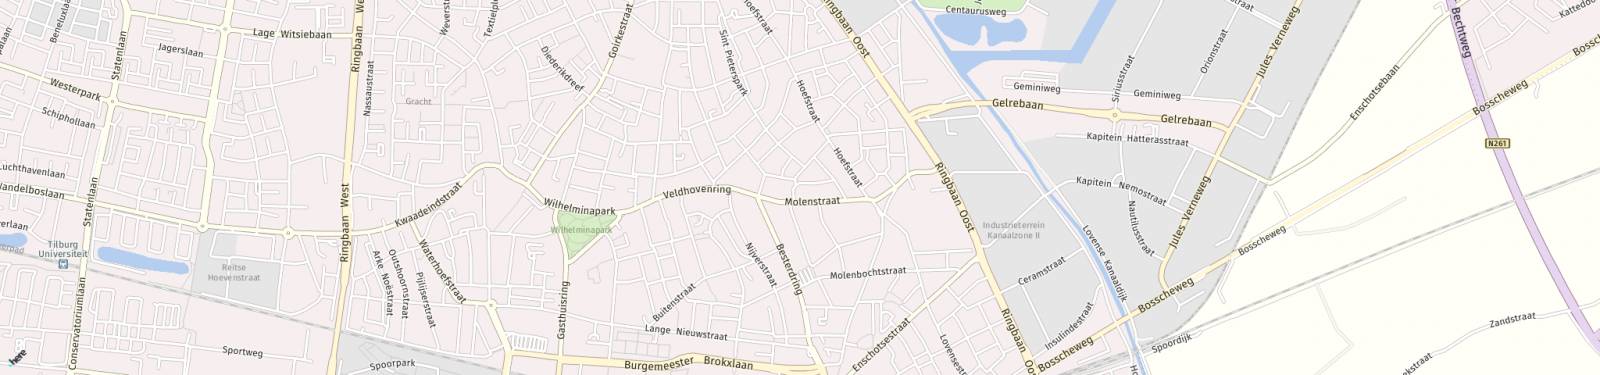 Kaart met locatie Studio Paduaplein